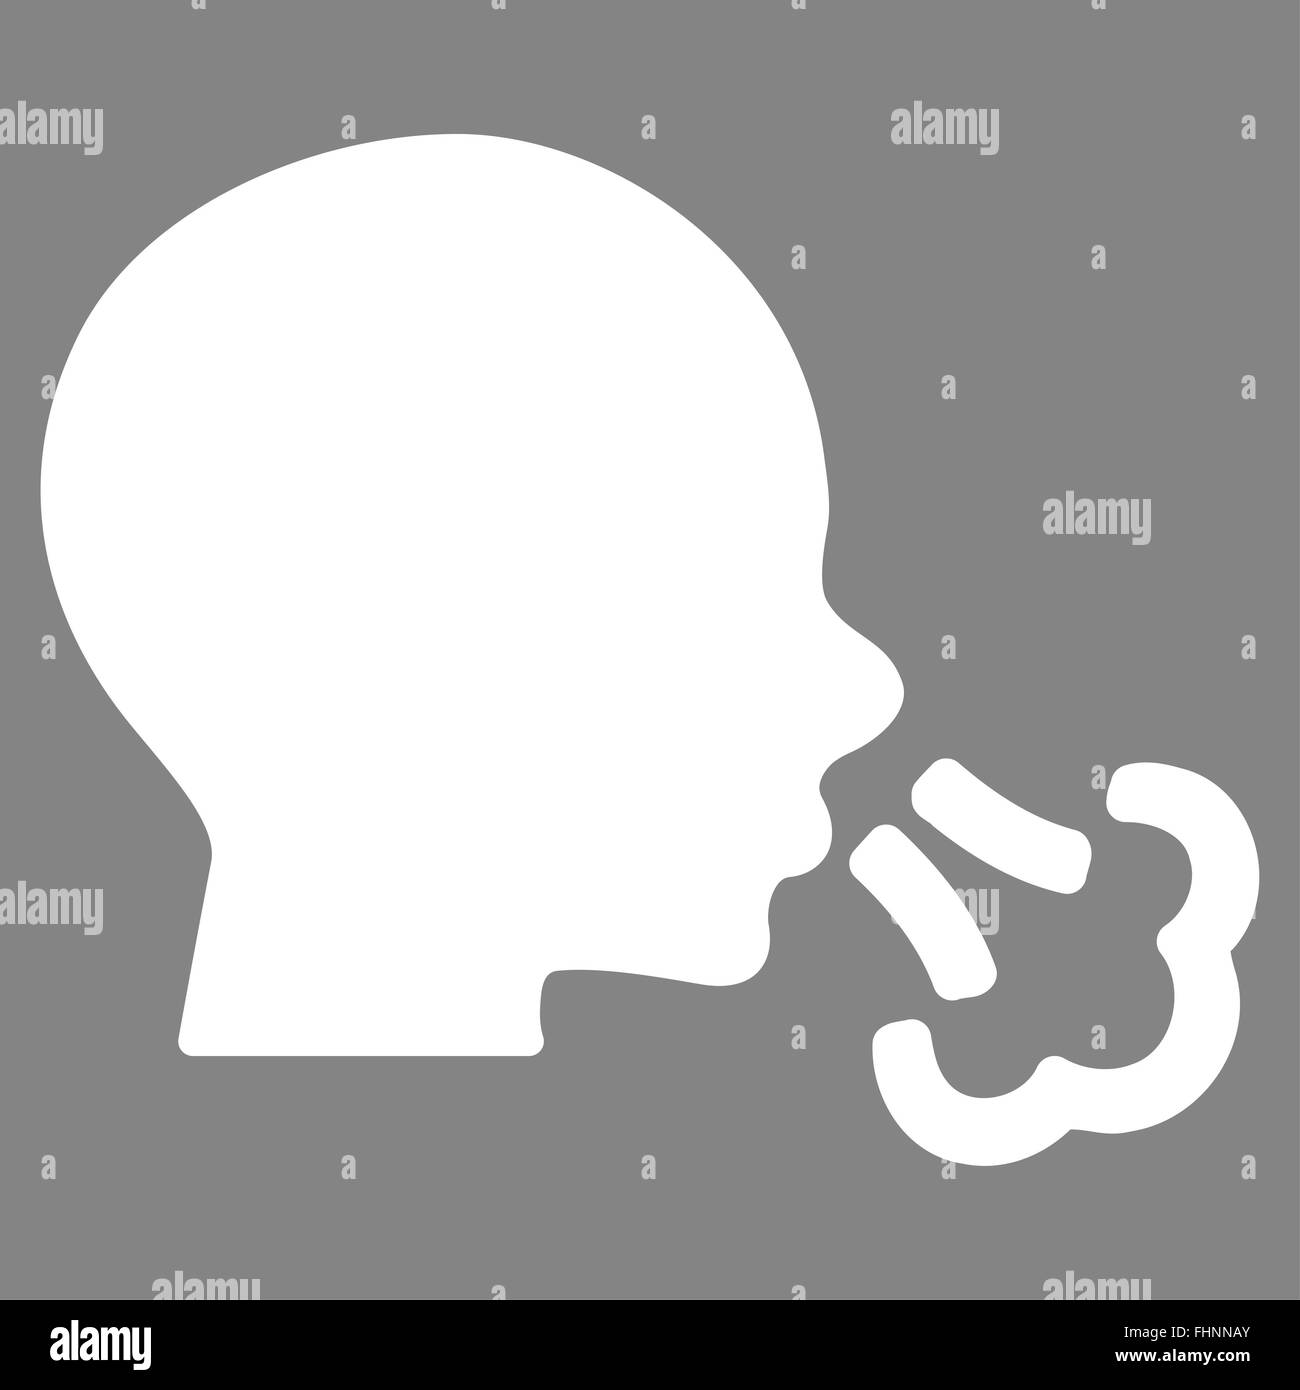 Sneezing Vector Icon Stock Photo